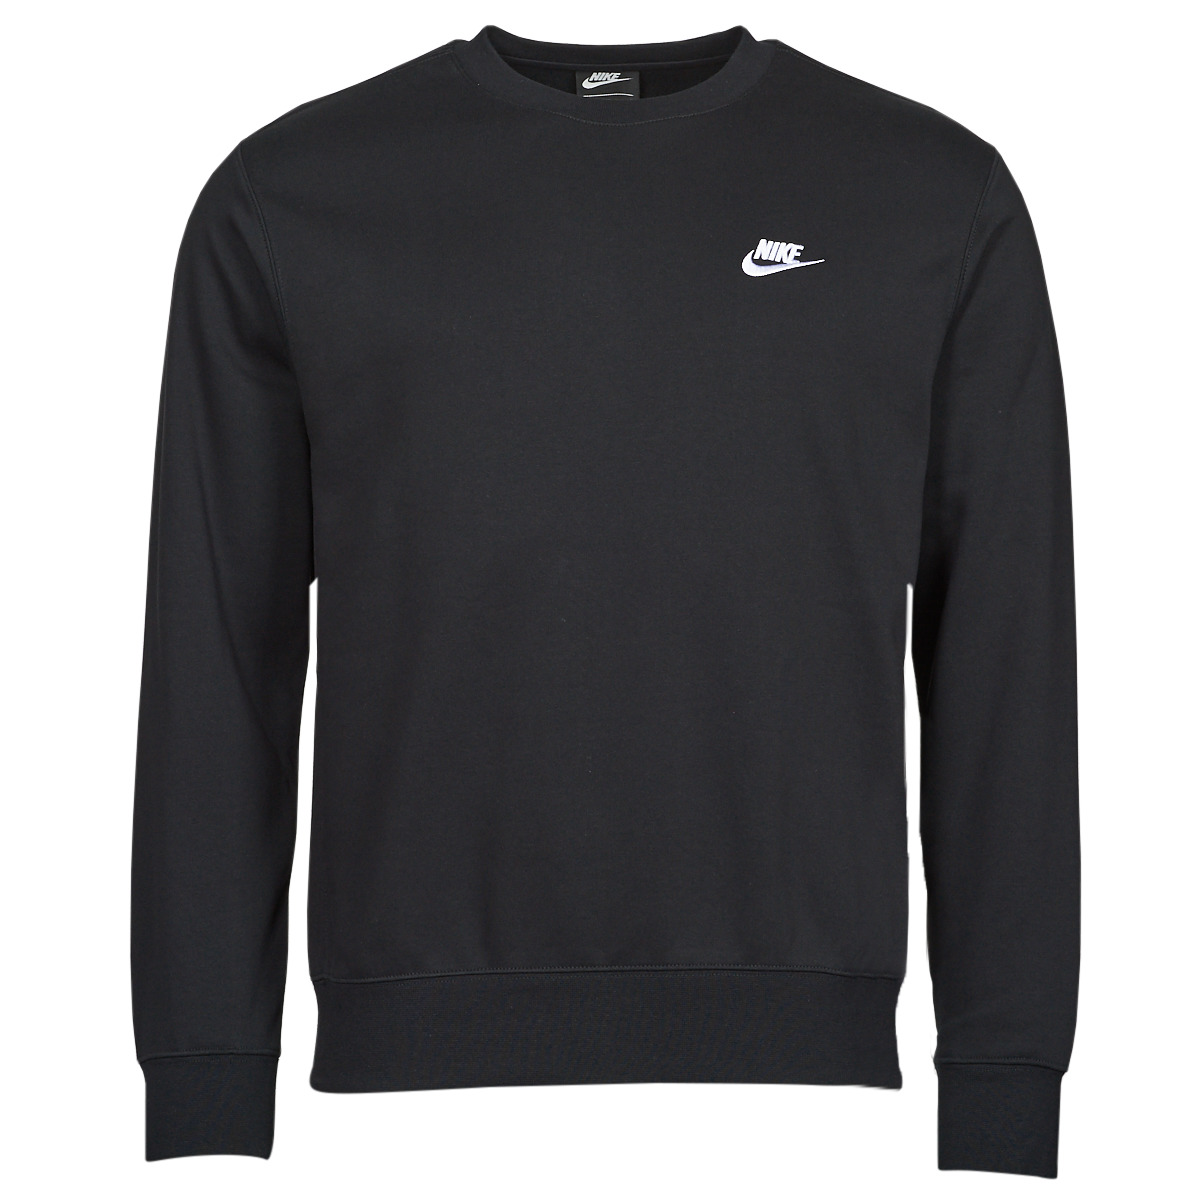 Nike - NSW Club Fleece Crew - Zwarte Sweater - M - Zwart